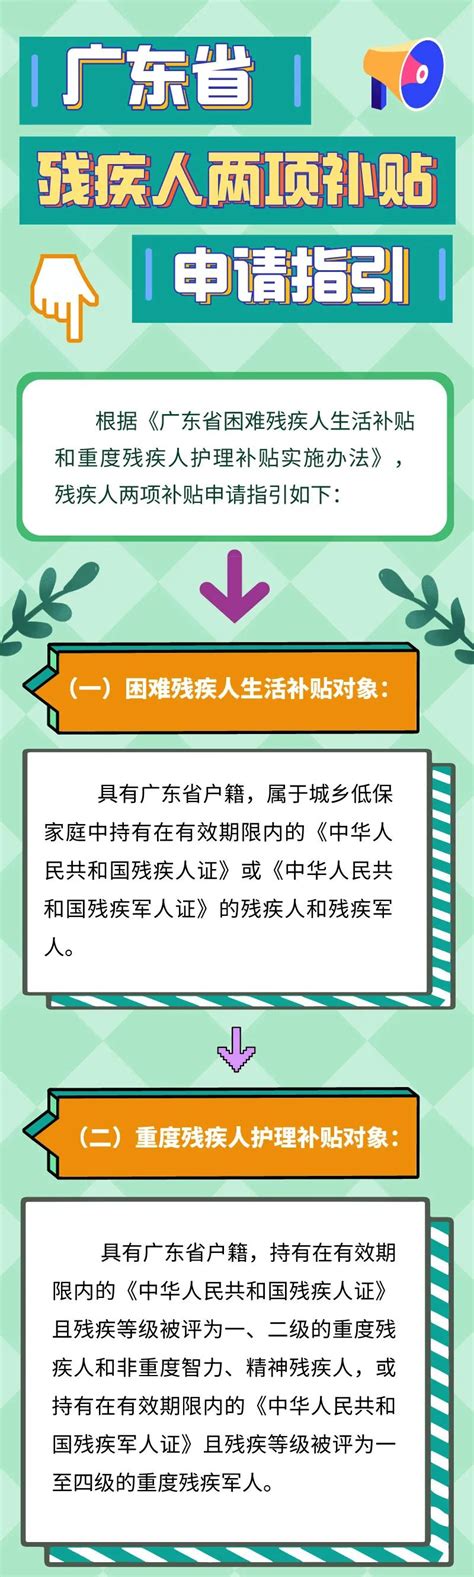 【图文解读】广东省残疾人两项补贴申领指引和资格认定操作指引